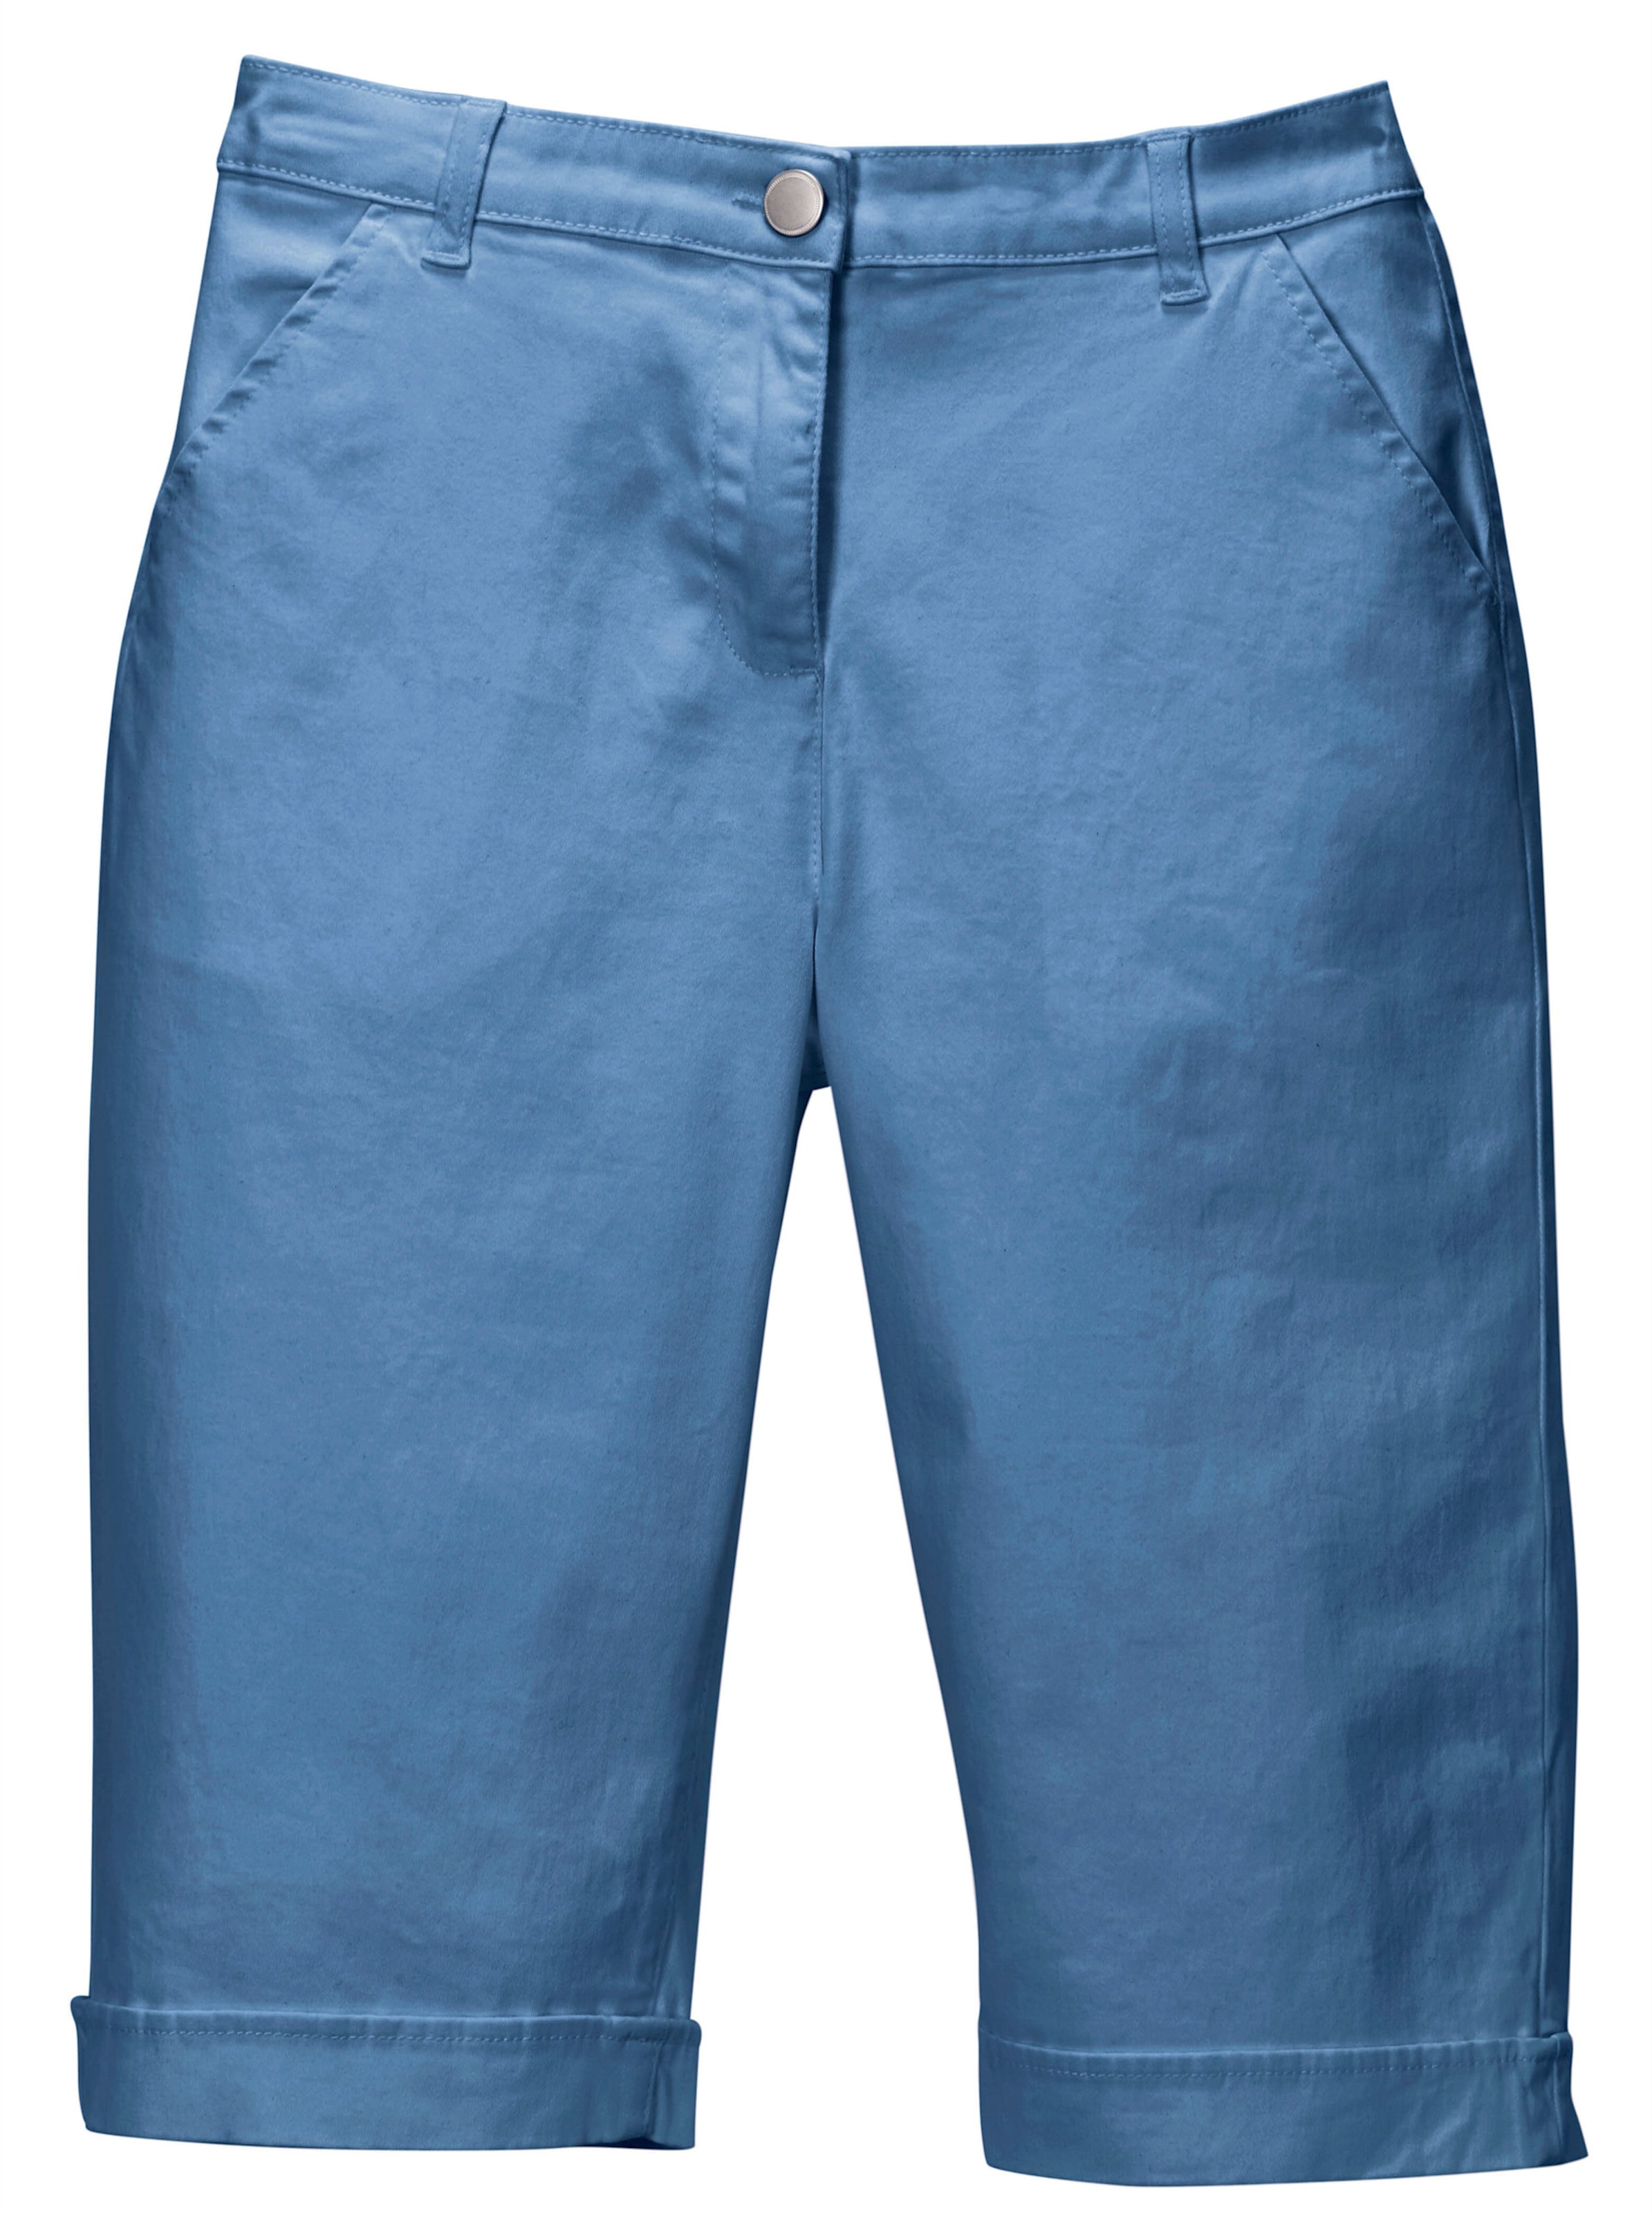 Taschen günstig Kaufen-Jeansbermudas in blau von heine. Jeansbermudas in blau von heine <![CDATA[Lässige Jeans-Bermudas in aktuellen Sommerfarben. Mit rückwärtigem Dehnbund, Gürtelschlaufen sowie Knopf und Reißverschluss. 2 Taschen vorne, 2 imitierte Gesäßtaschen. Am Sau